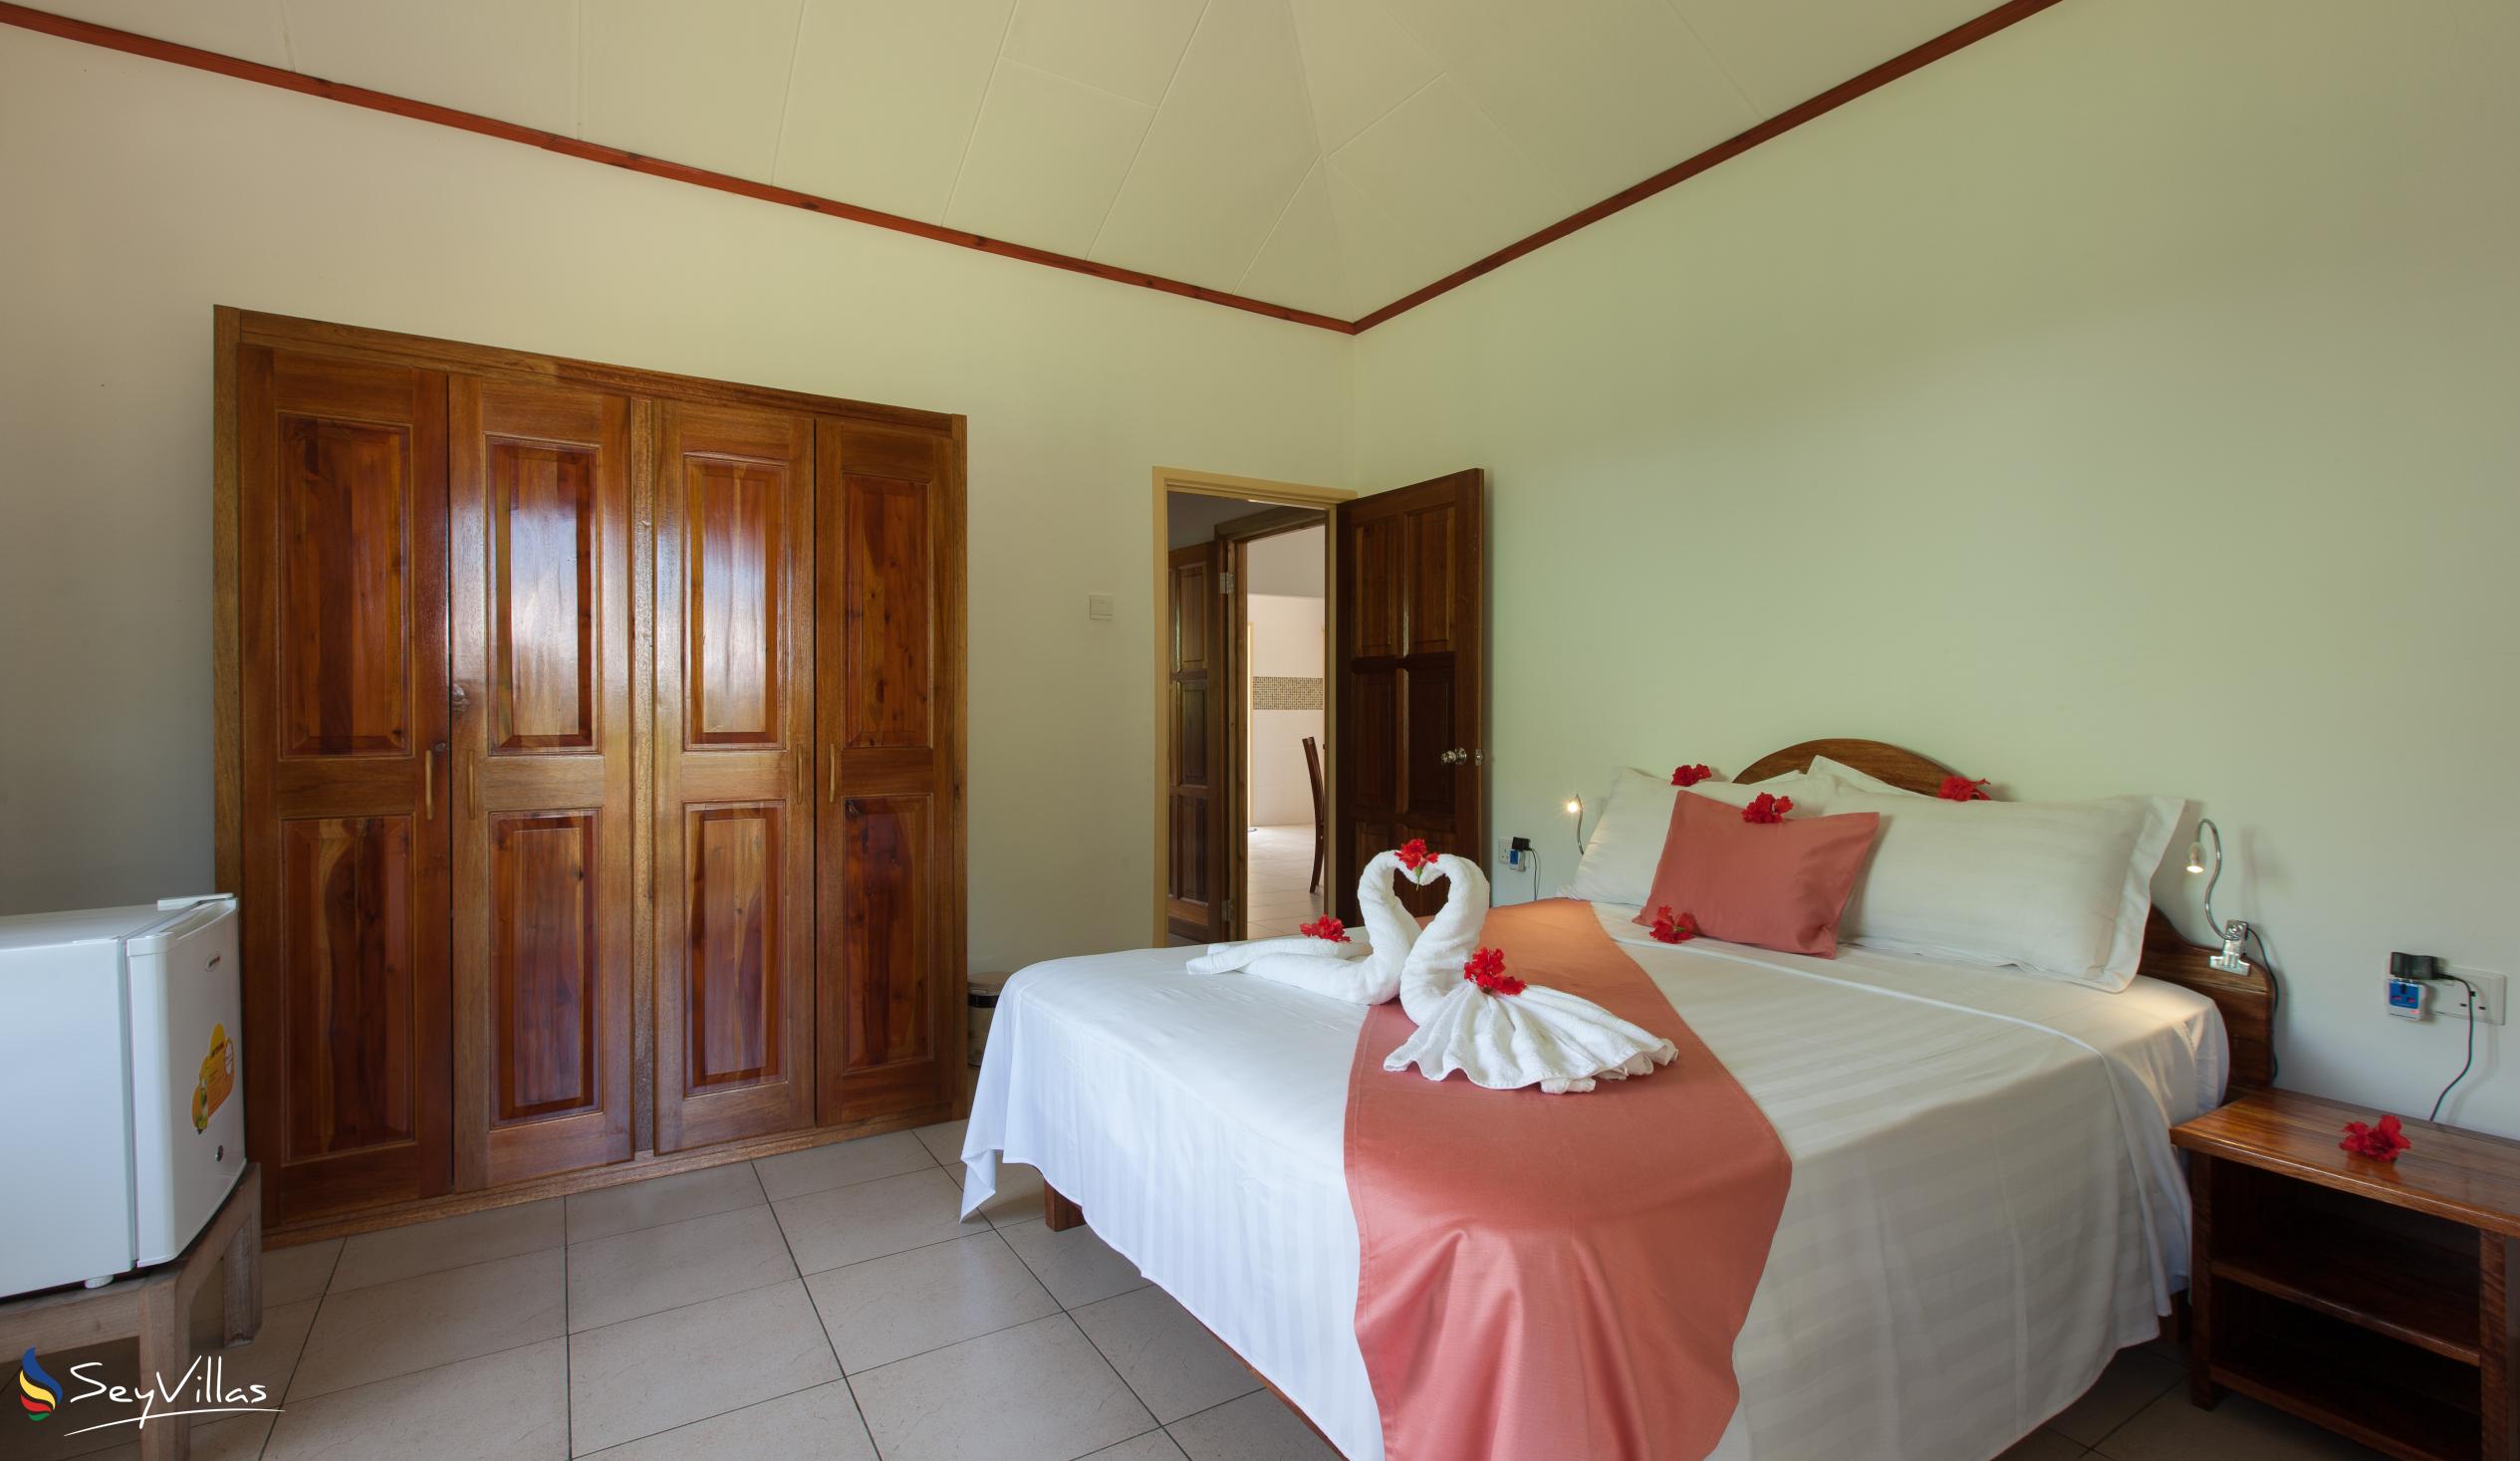 Foto 29: Hostellerie La Digue - Chalet 3 chambres - La Digue (Seychelles)